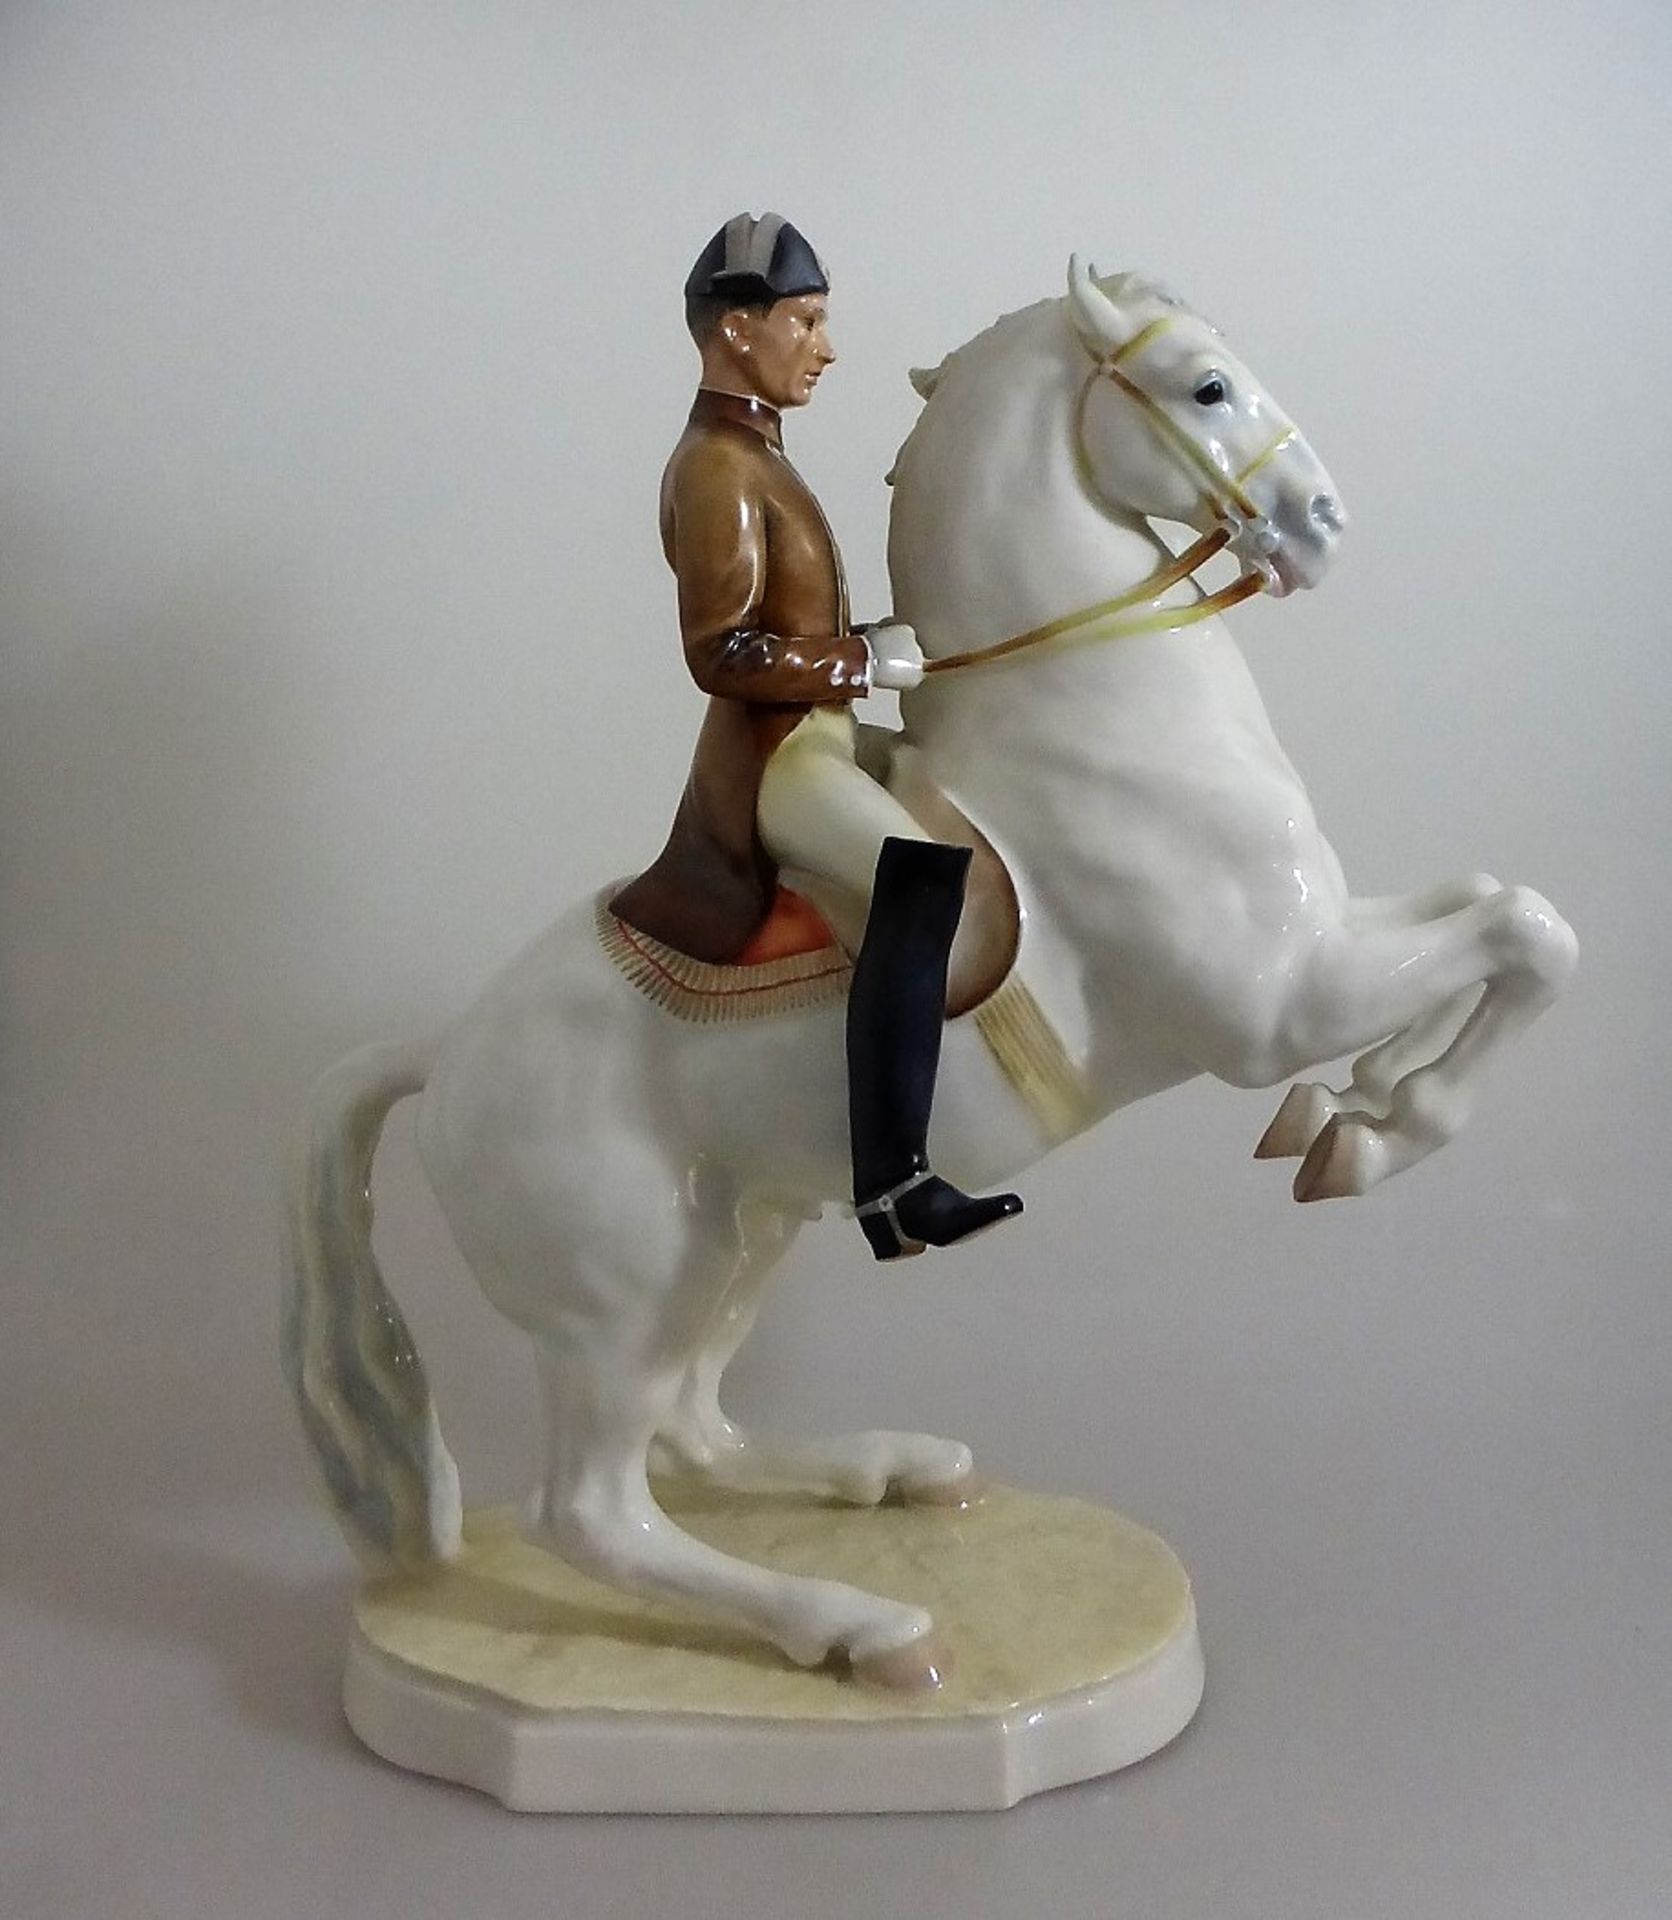 Hutschenreuther Porzellanfigur, "Reiter der spanischen Hofreitschule mit Pferd", Entw.: